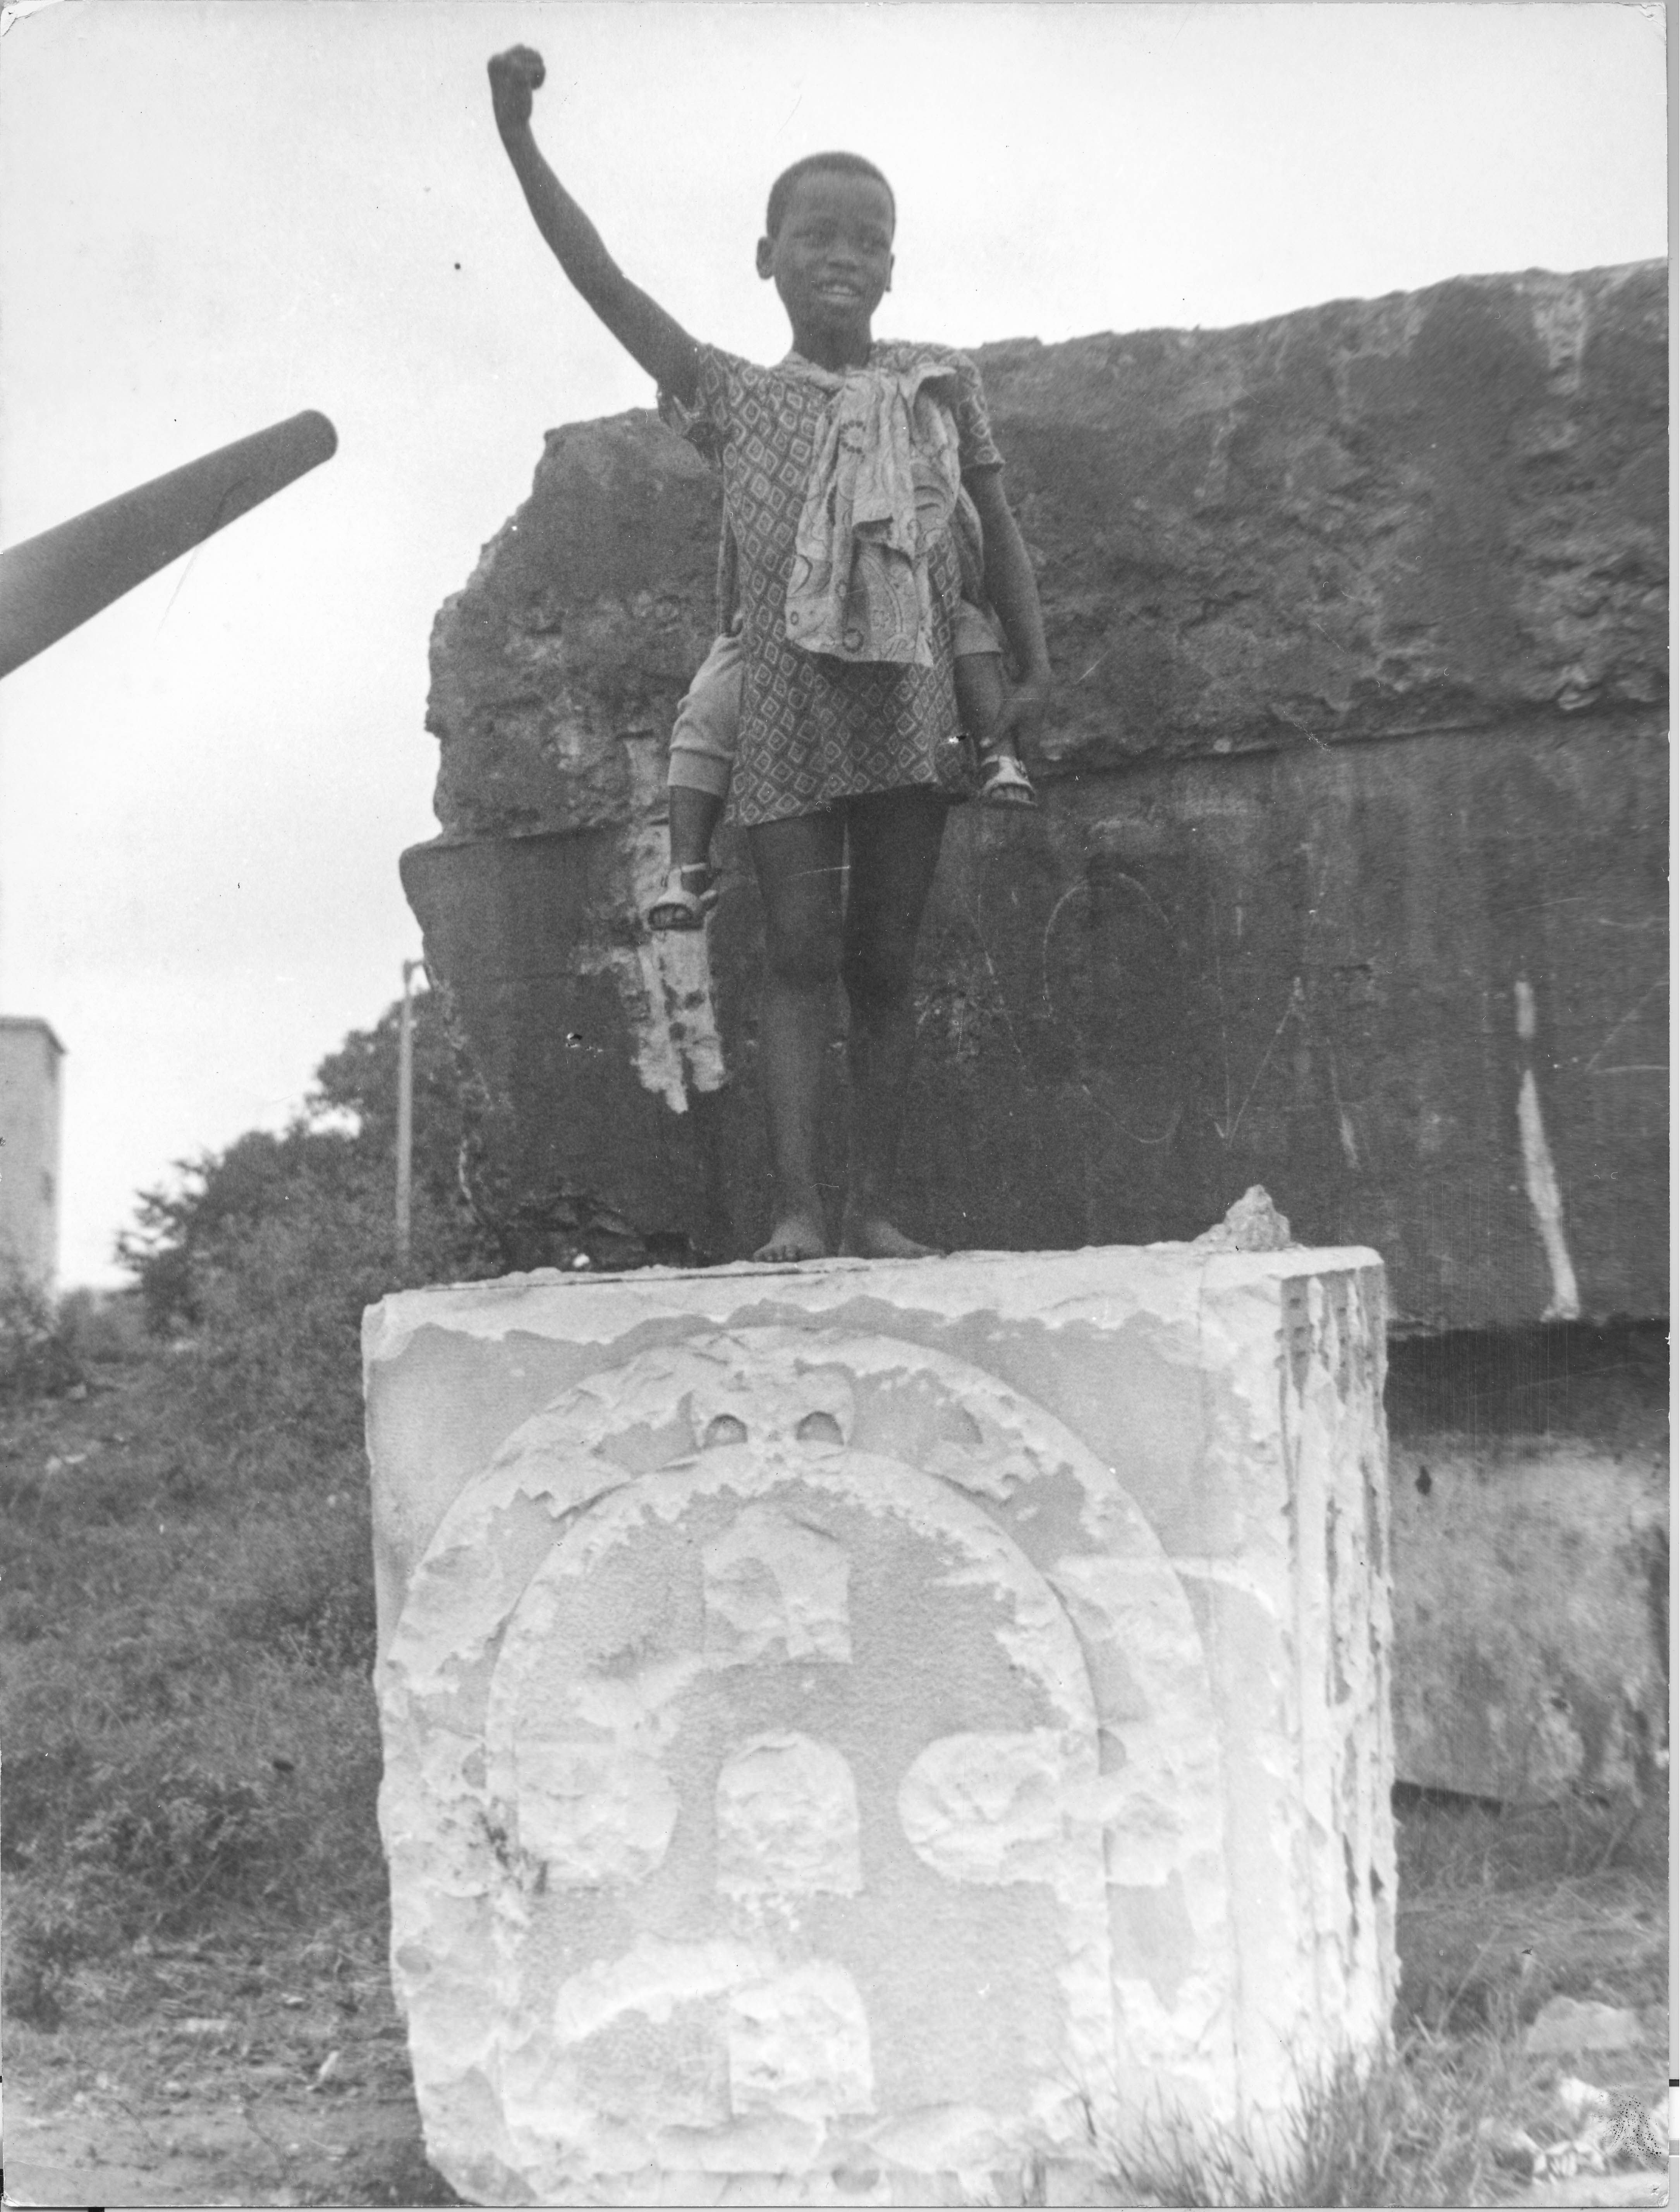 Na imagem, uma criança com punho levantado, em cima de um monumento quebrado na ocasião da revolução com o Brasão de Portugal.